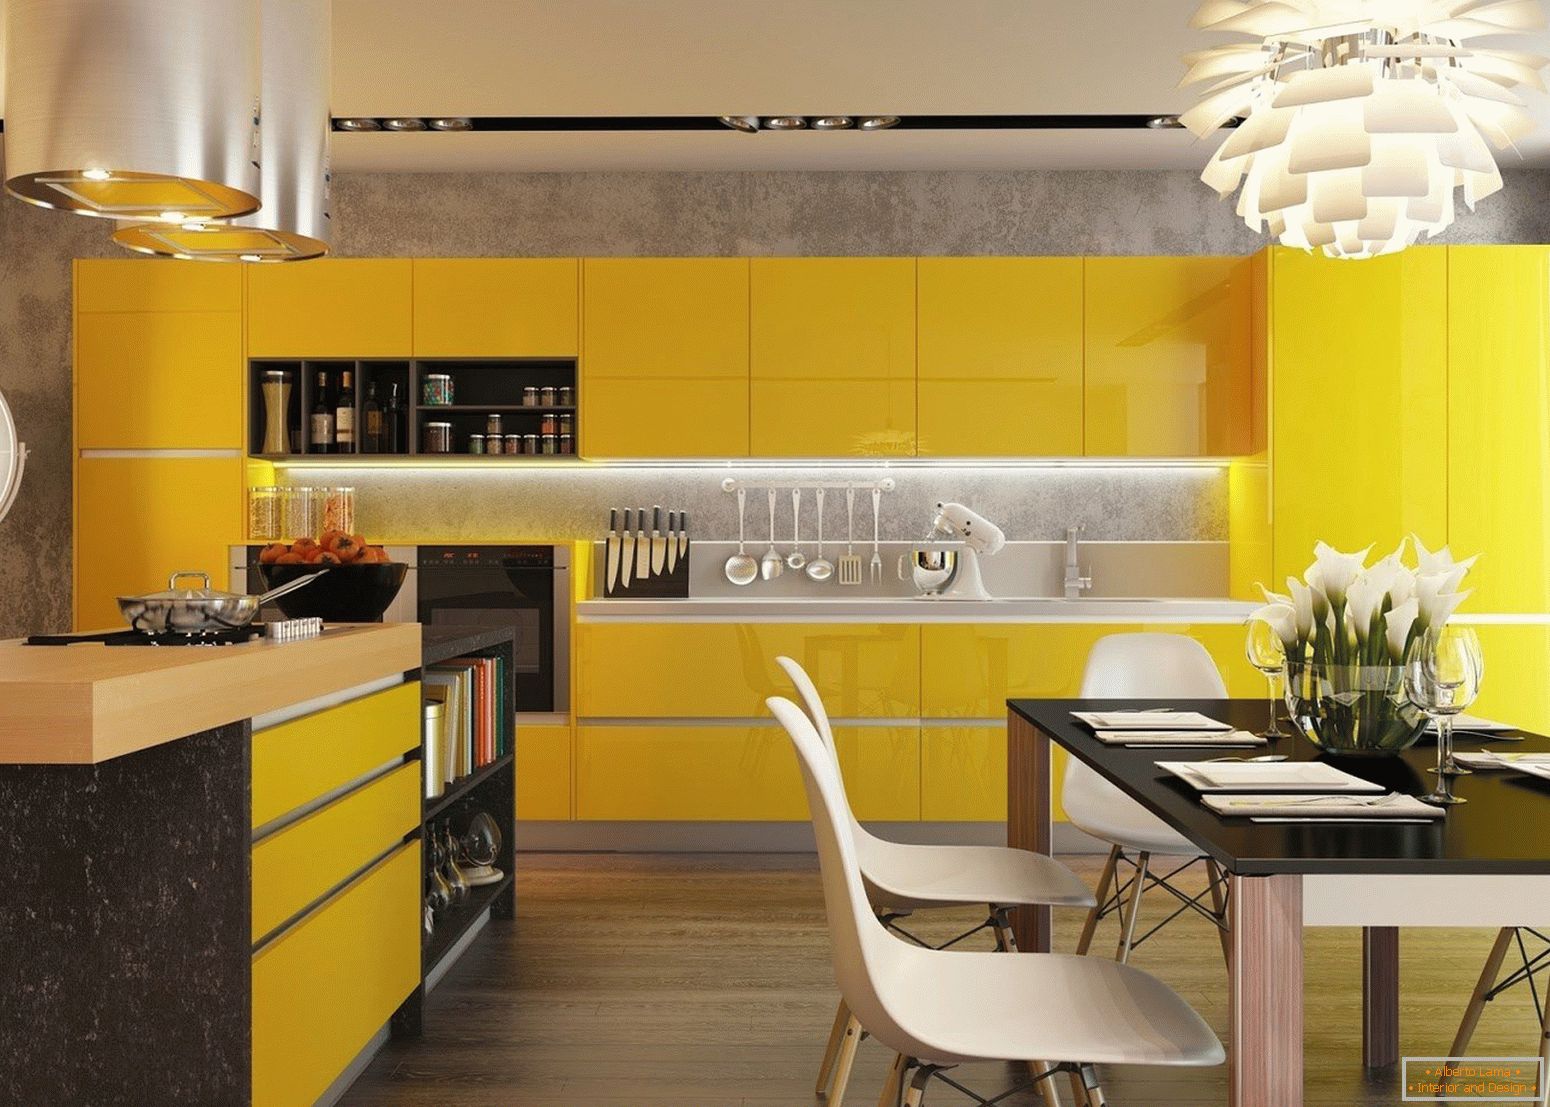 Cuisine с желтыми фасадами и черным столом